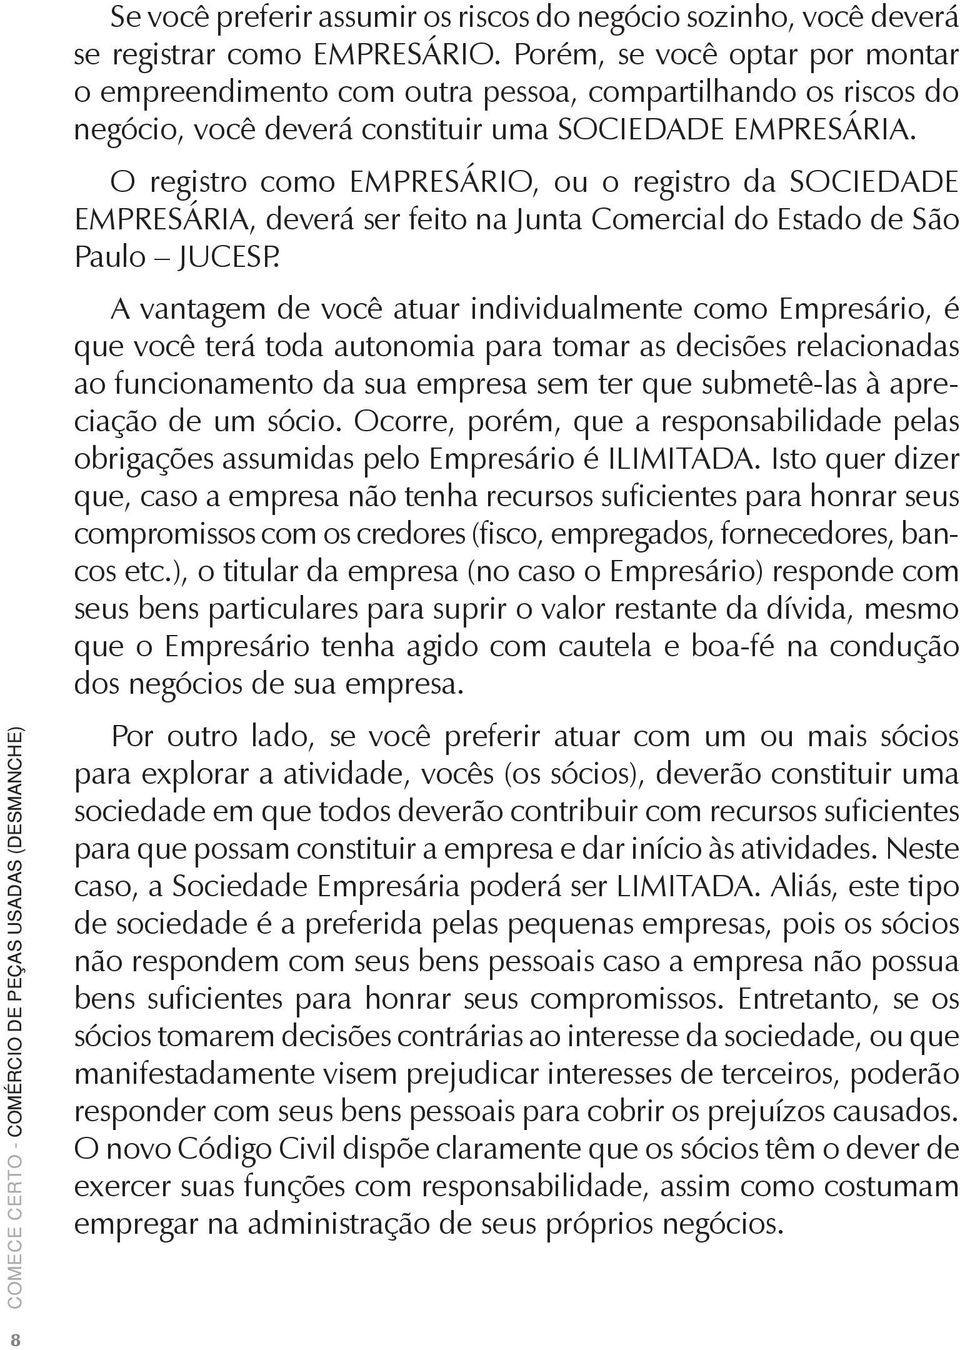 O registro como EMPRESÁRIO, ou o registro da SOCIEDADE EMPRESÁRIA, deverá ser feito na Junta Comercial do Estado de São Paulo JUCESP.